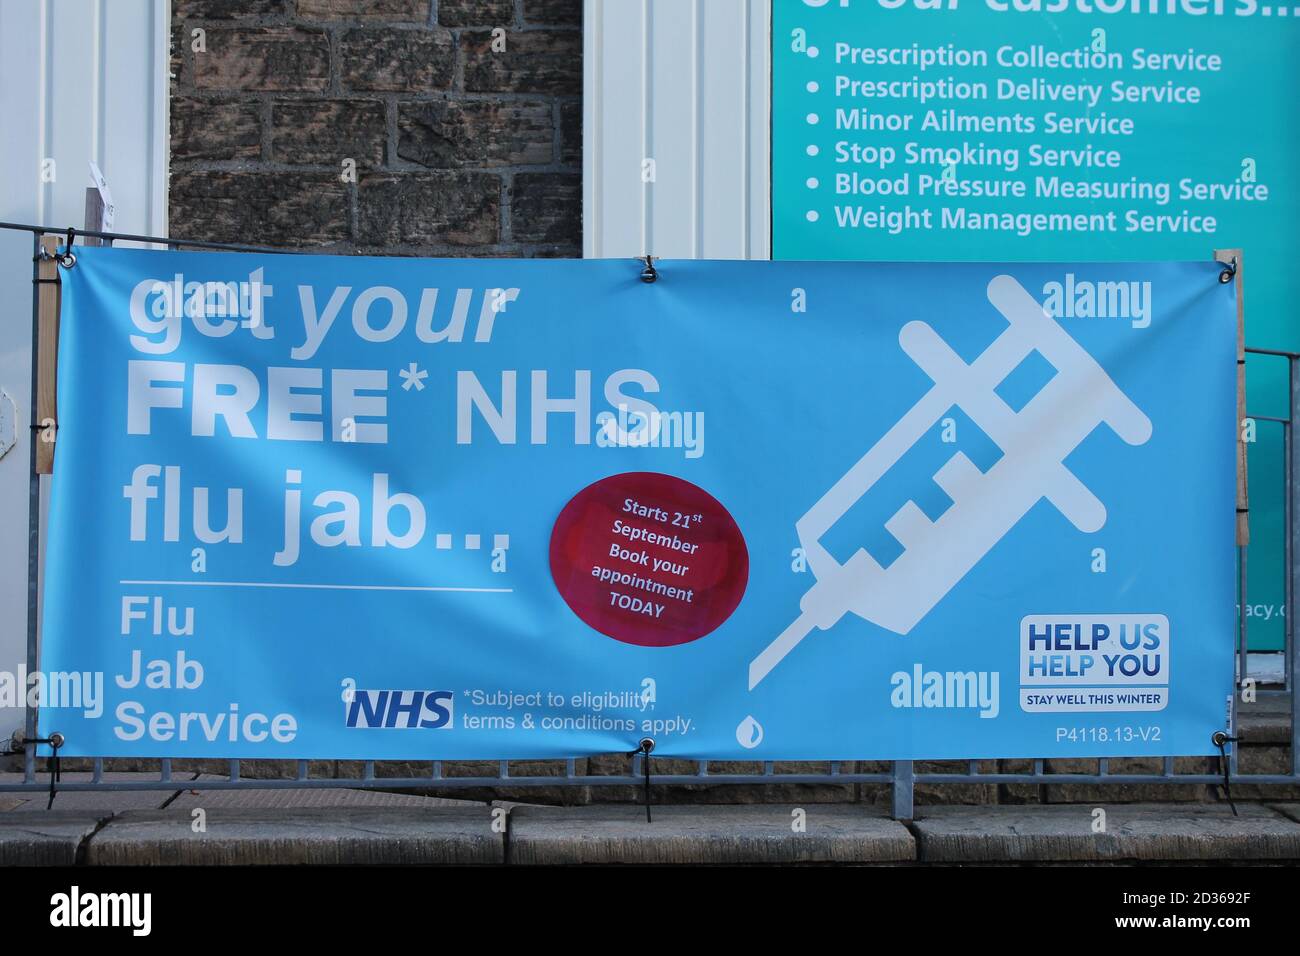 Flu jab sign outside pharmacy in UK Stock Photo